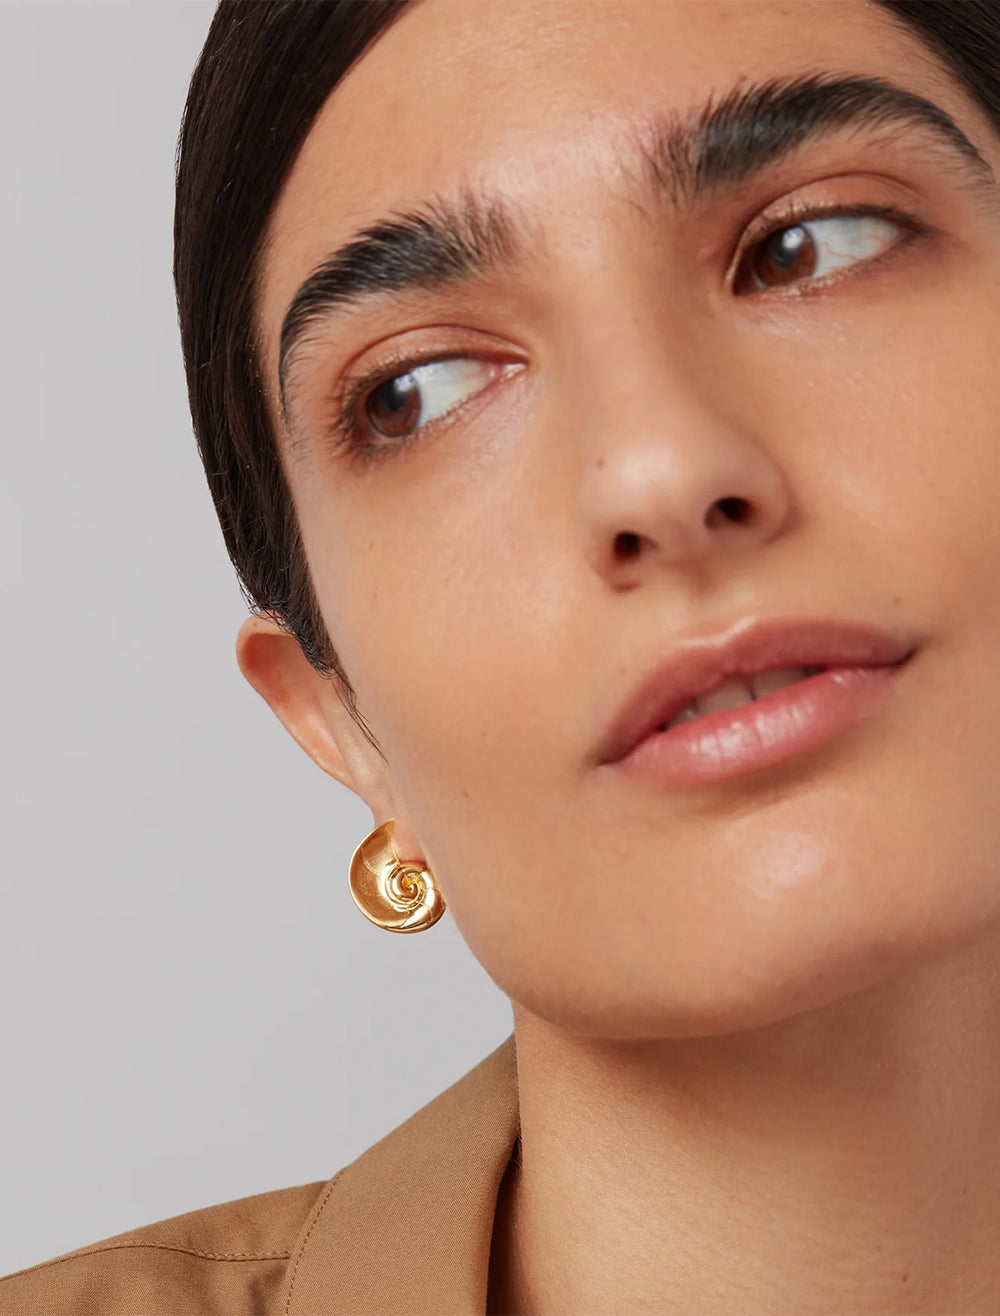 Model wearing Jenny Bird's dylan earrings in gold.